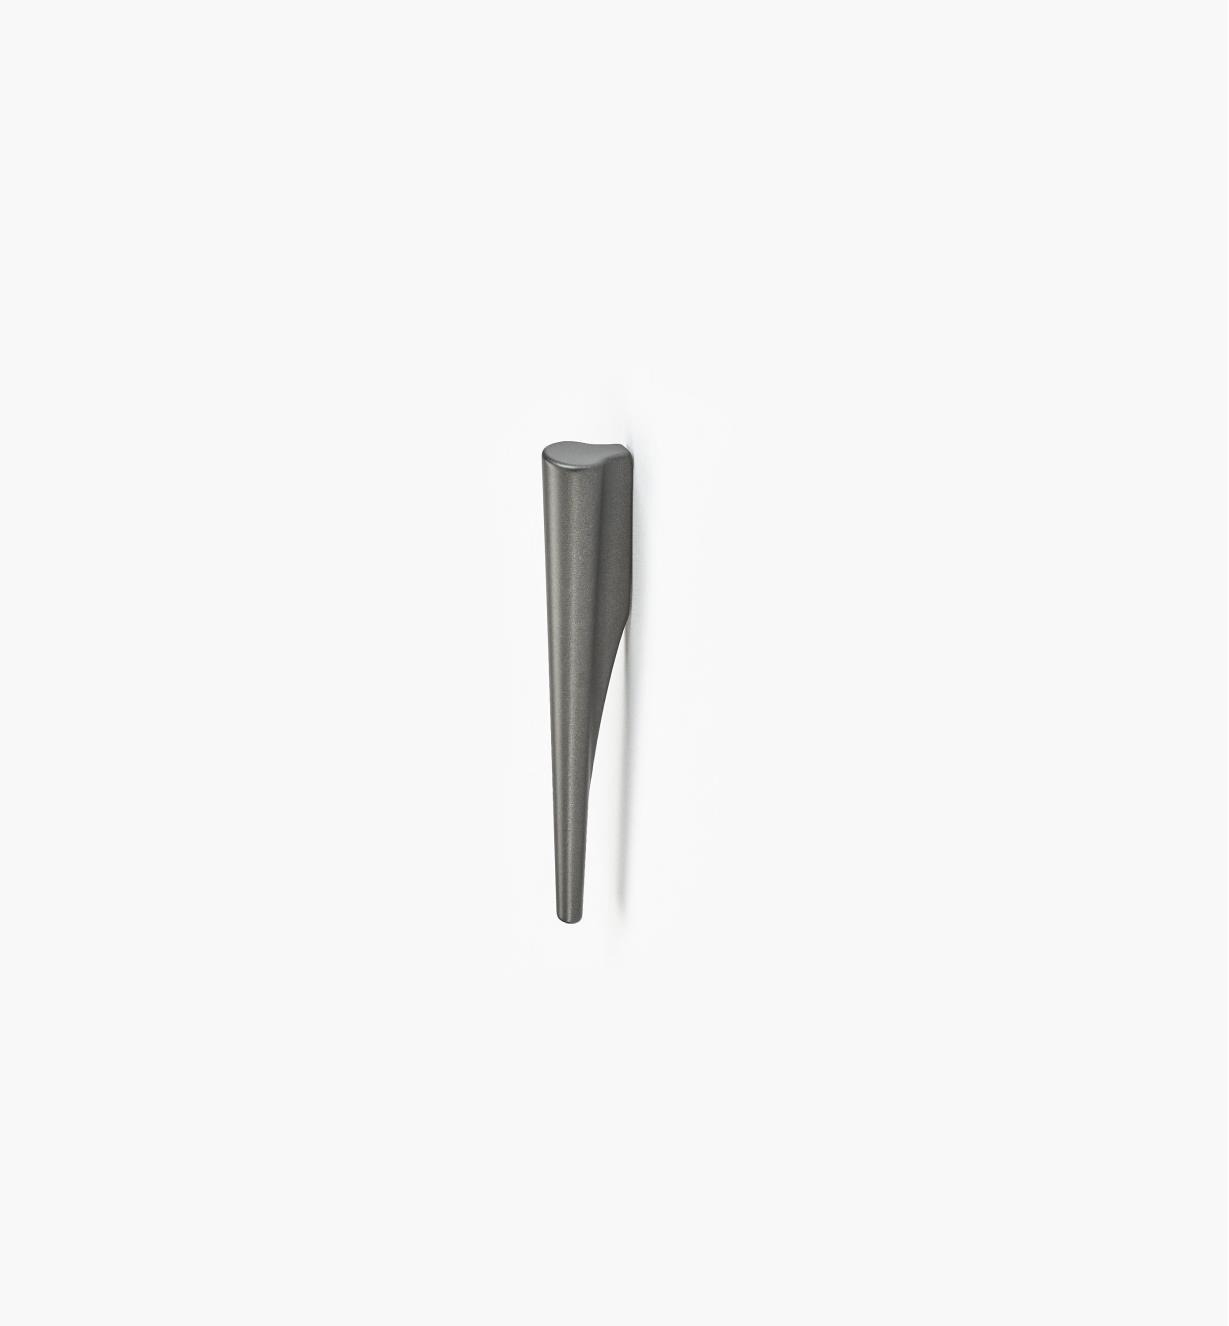 00A7850 - Libra Small Graphite Handle, 32mm